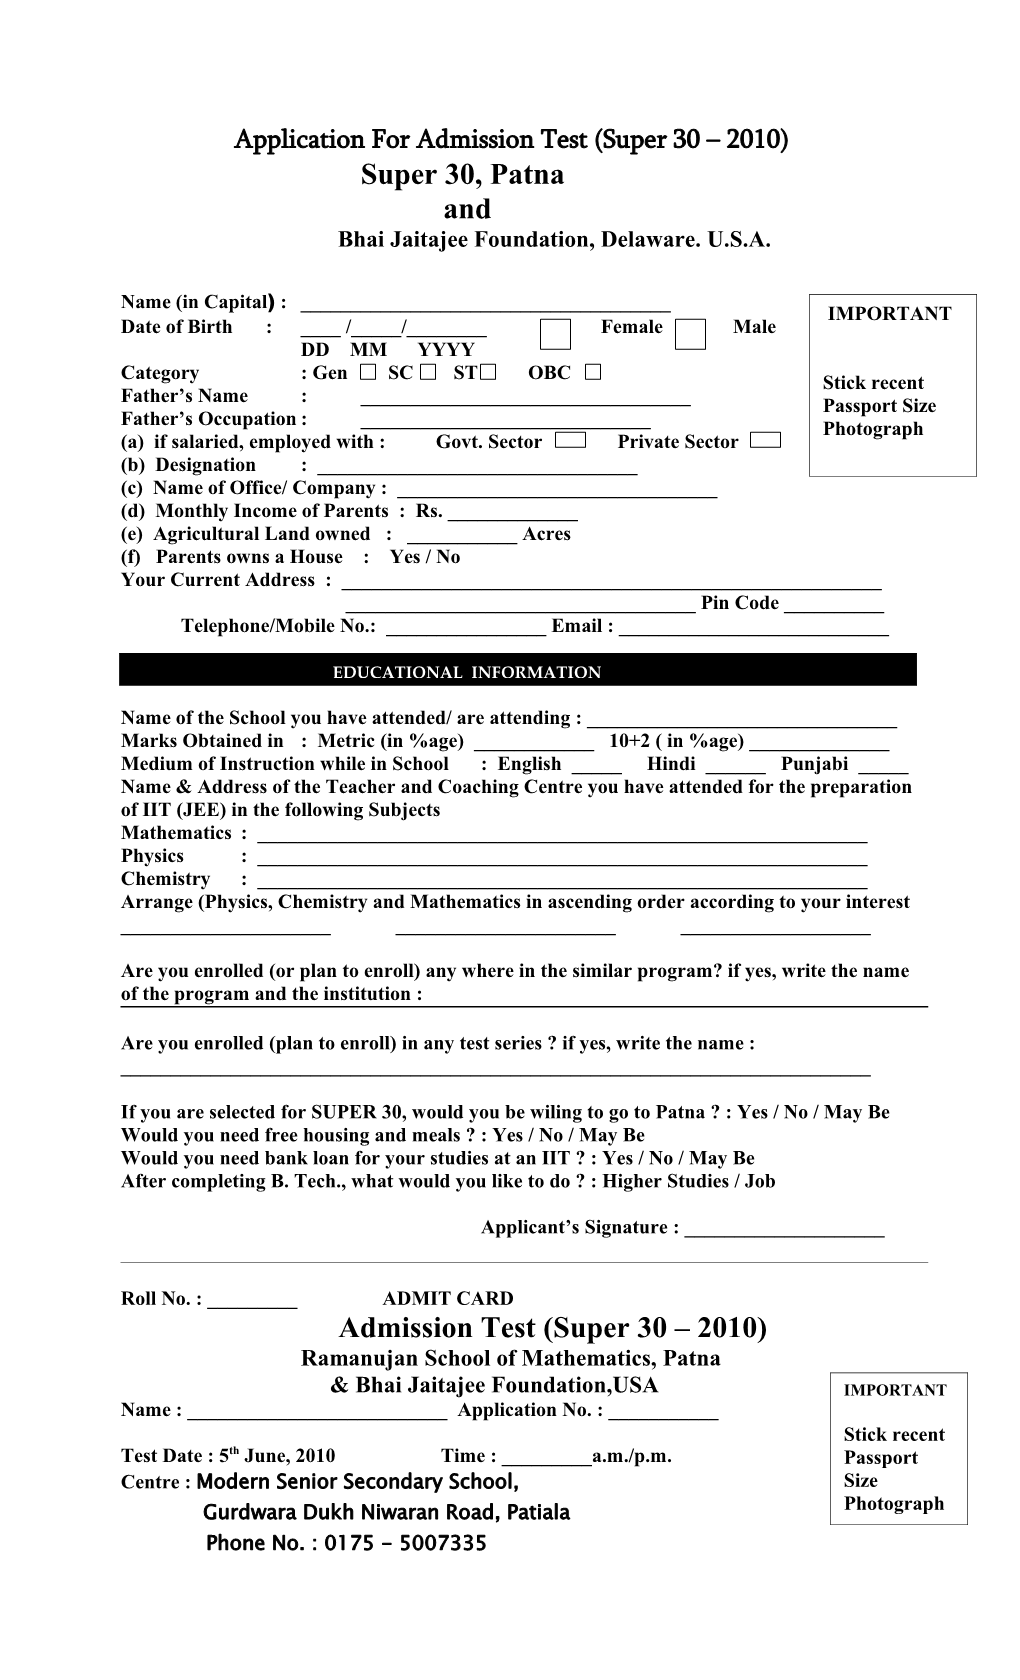 Application for Admission Test (Super 30 2010)